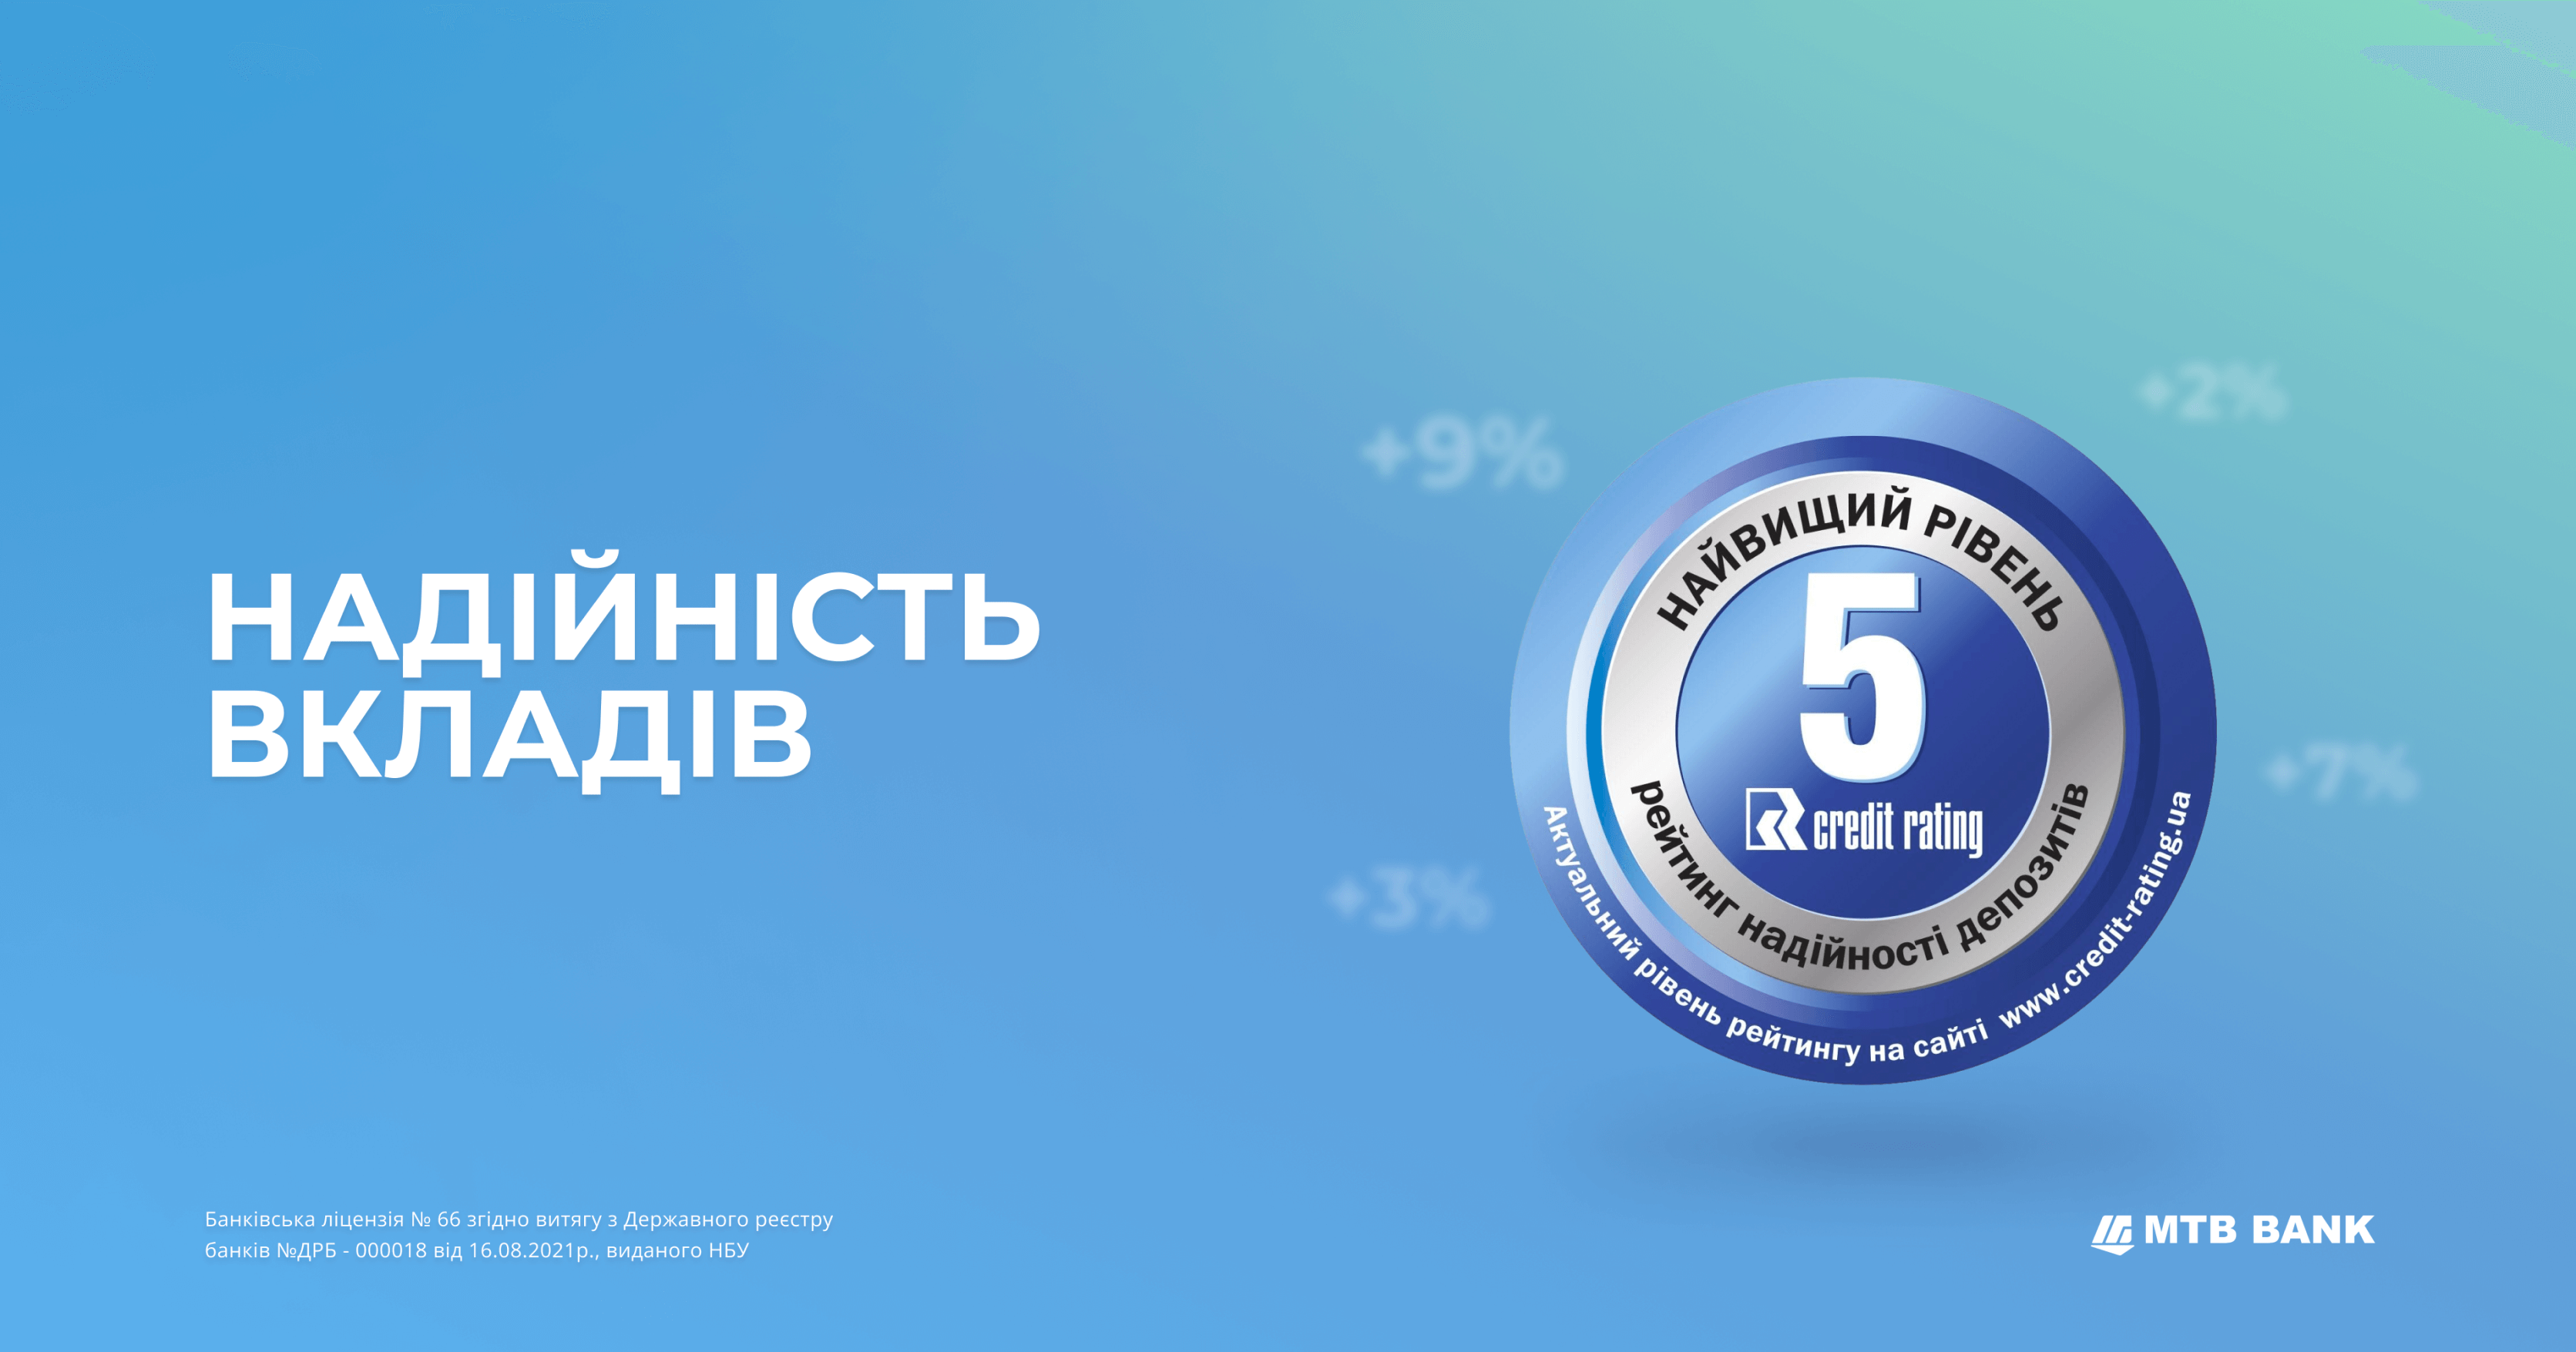 Надійність депозитів в МТБ БАНК  на найвищому рівні - фото - mtb.ua